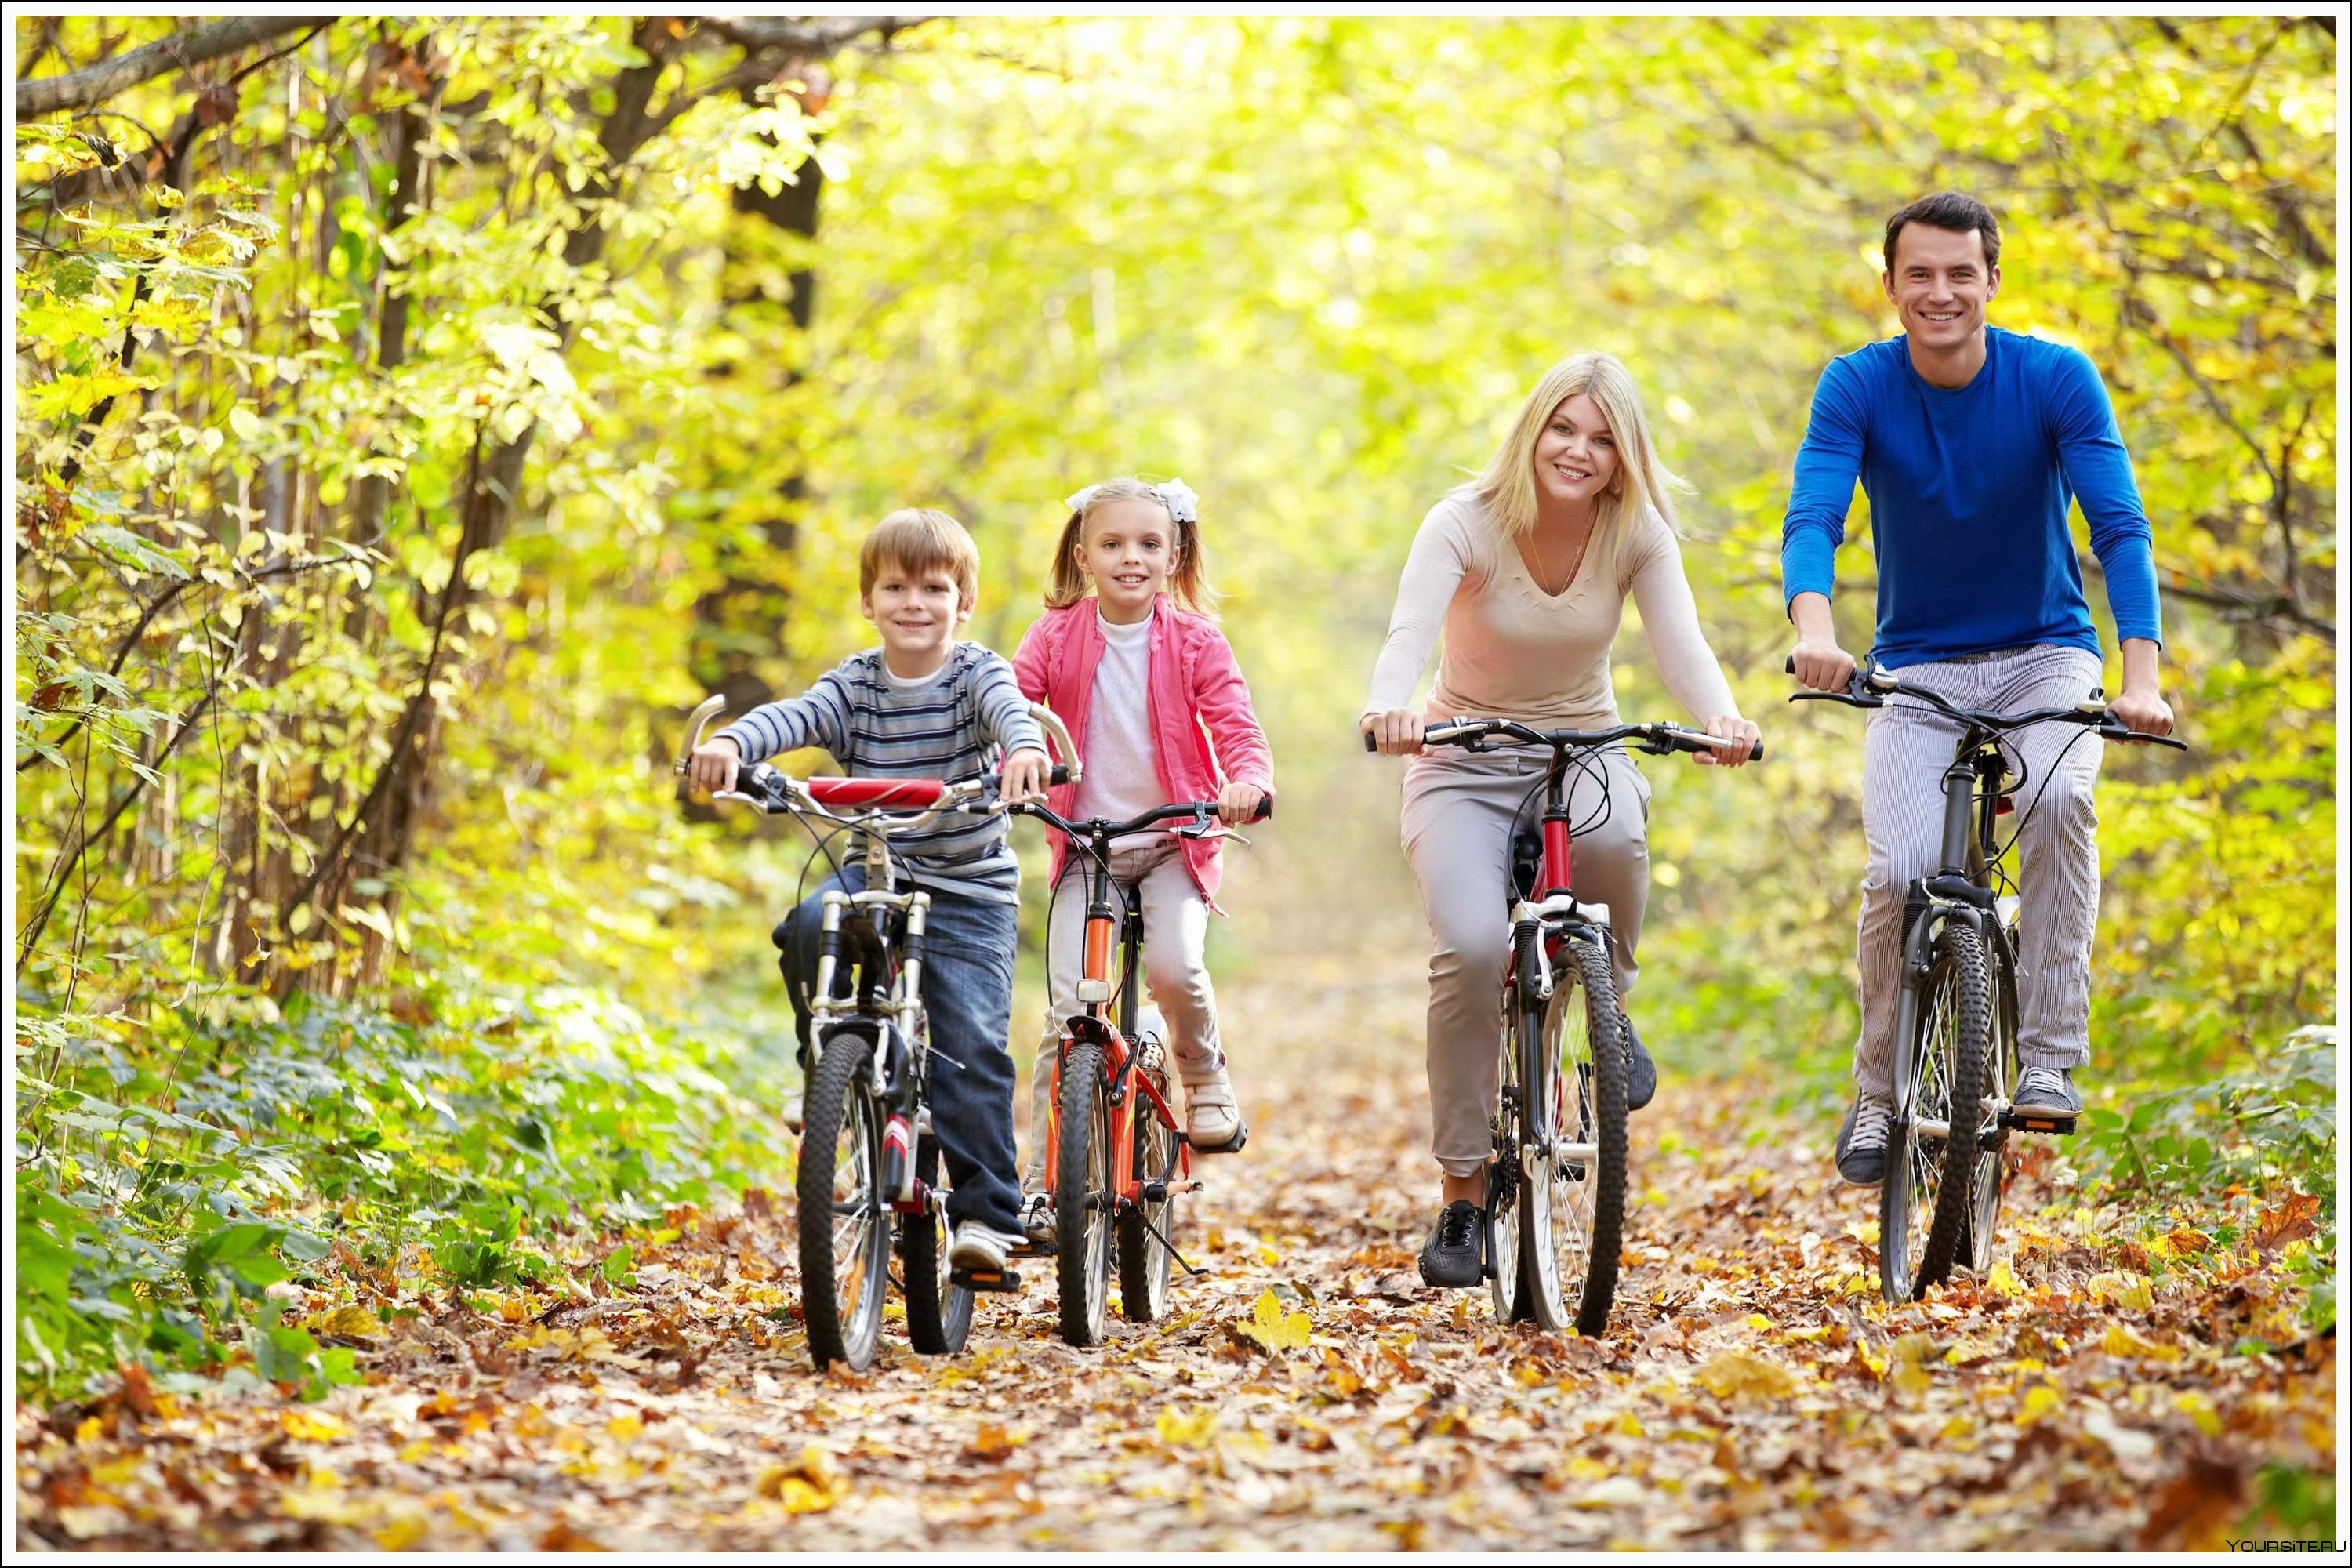 Велосемья. Прогулки на свежем воздухе. Семья на прогулке. Прогулка на природе. Семья на велосипедах.